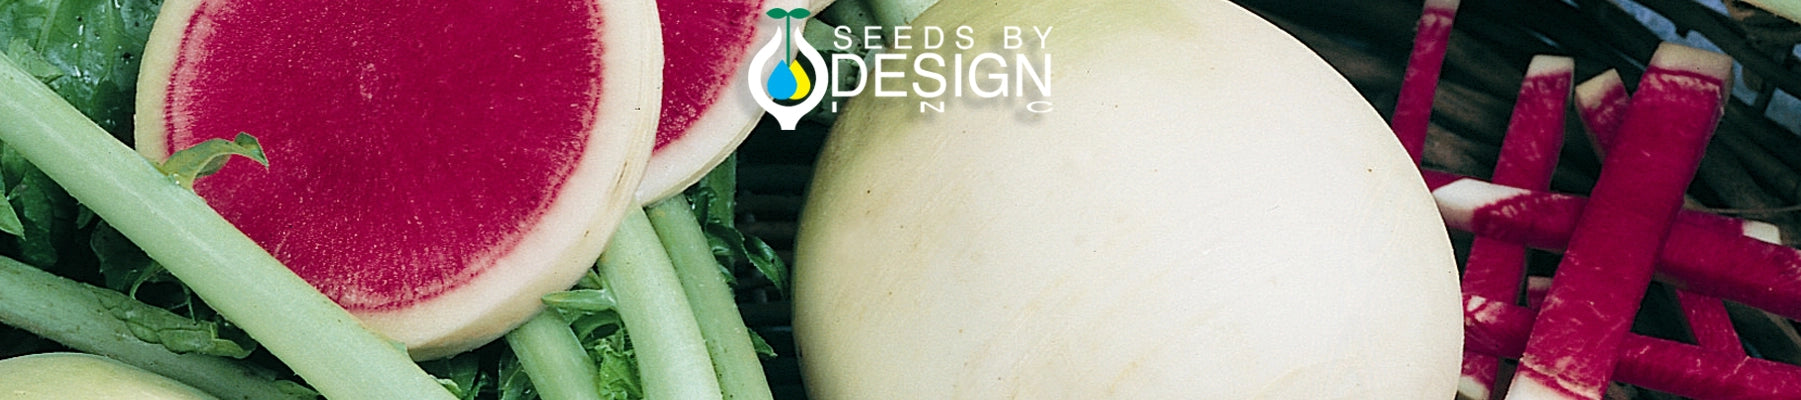 Banner //seedsbydesign.com/cdn/shop/t/22/assets/banner-sxd4-lg.webp?v=59344877546431135951709315320